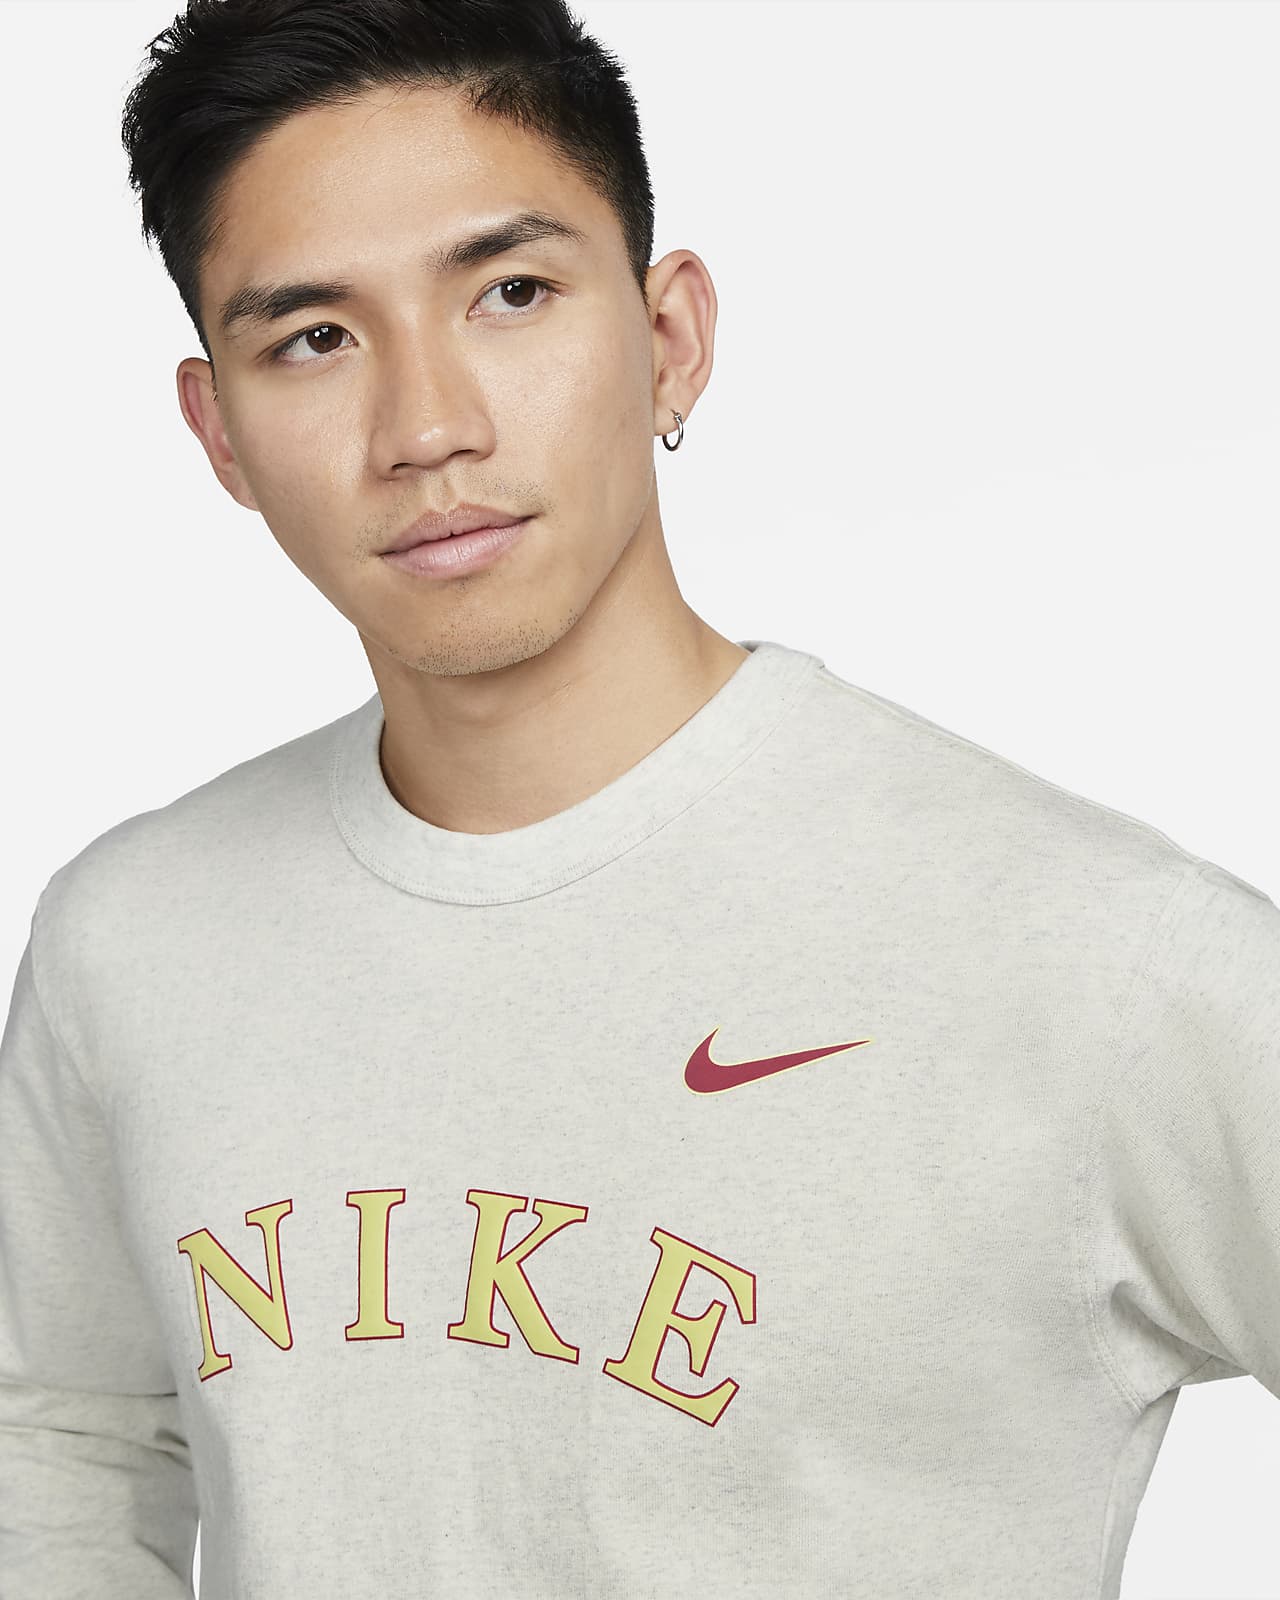 NIKE公式】ナイキ スポーツウェア メンズ ロングスリーブ Tシャツ 